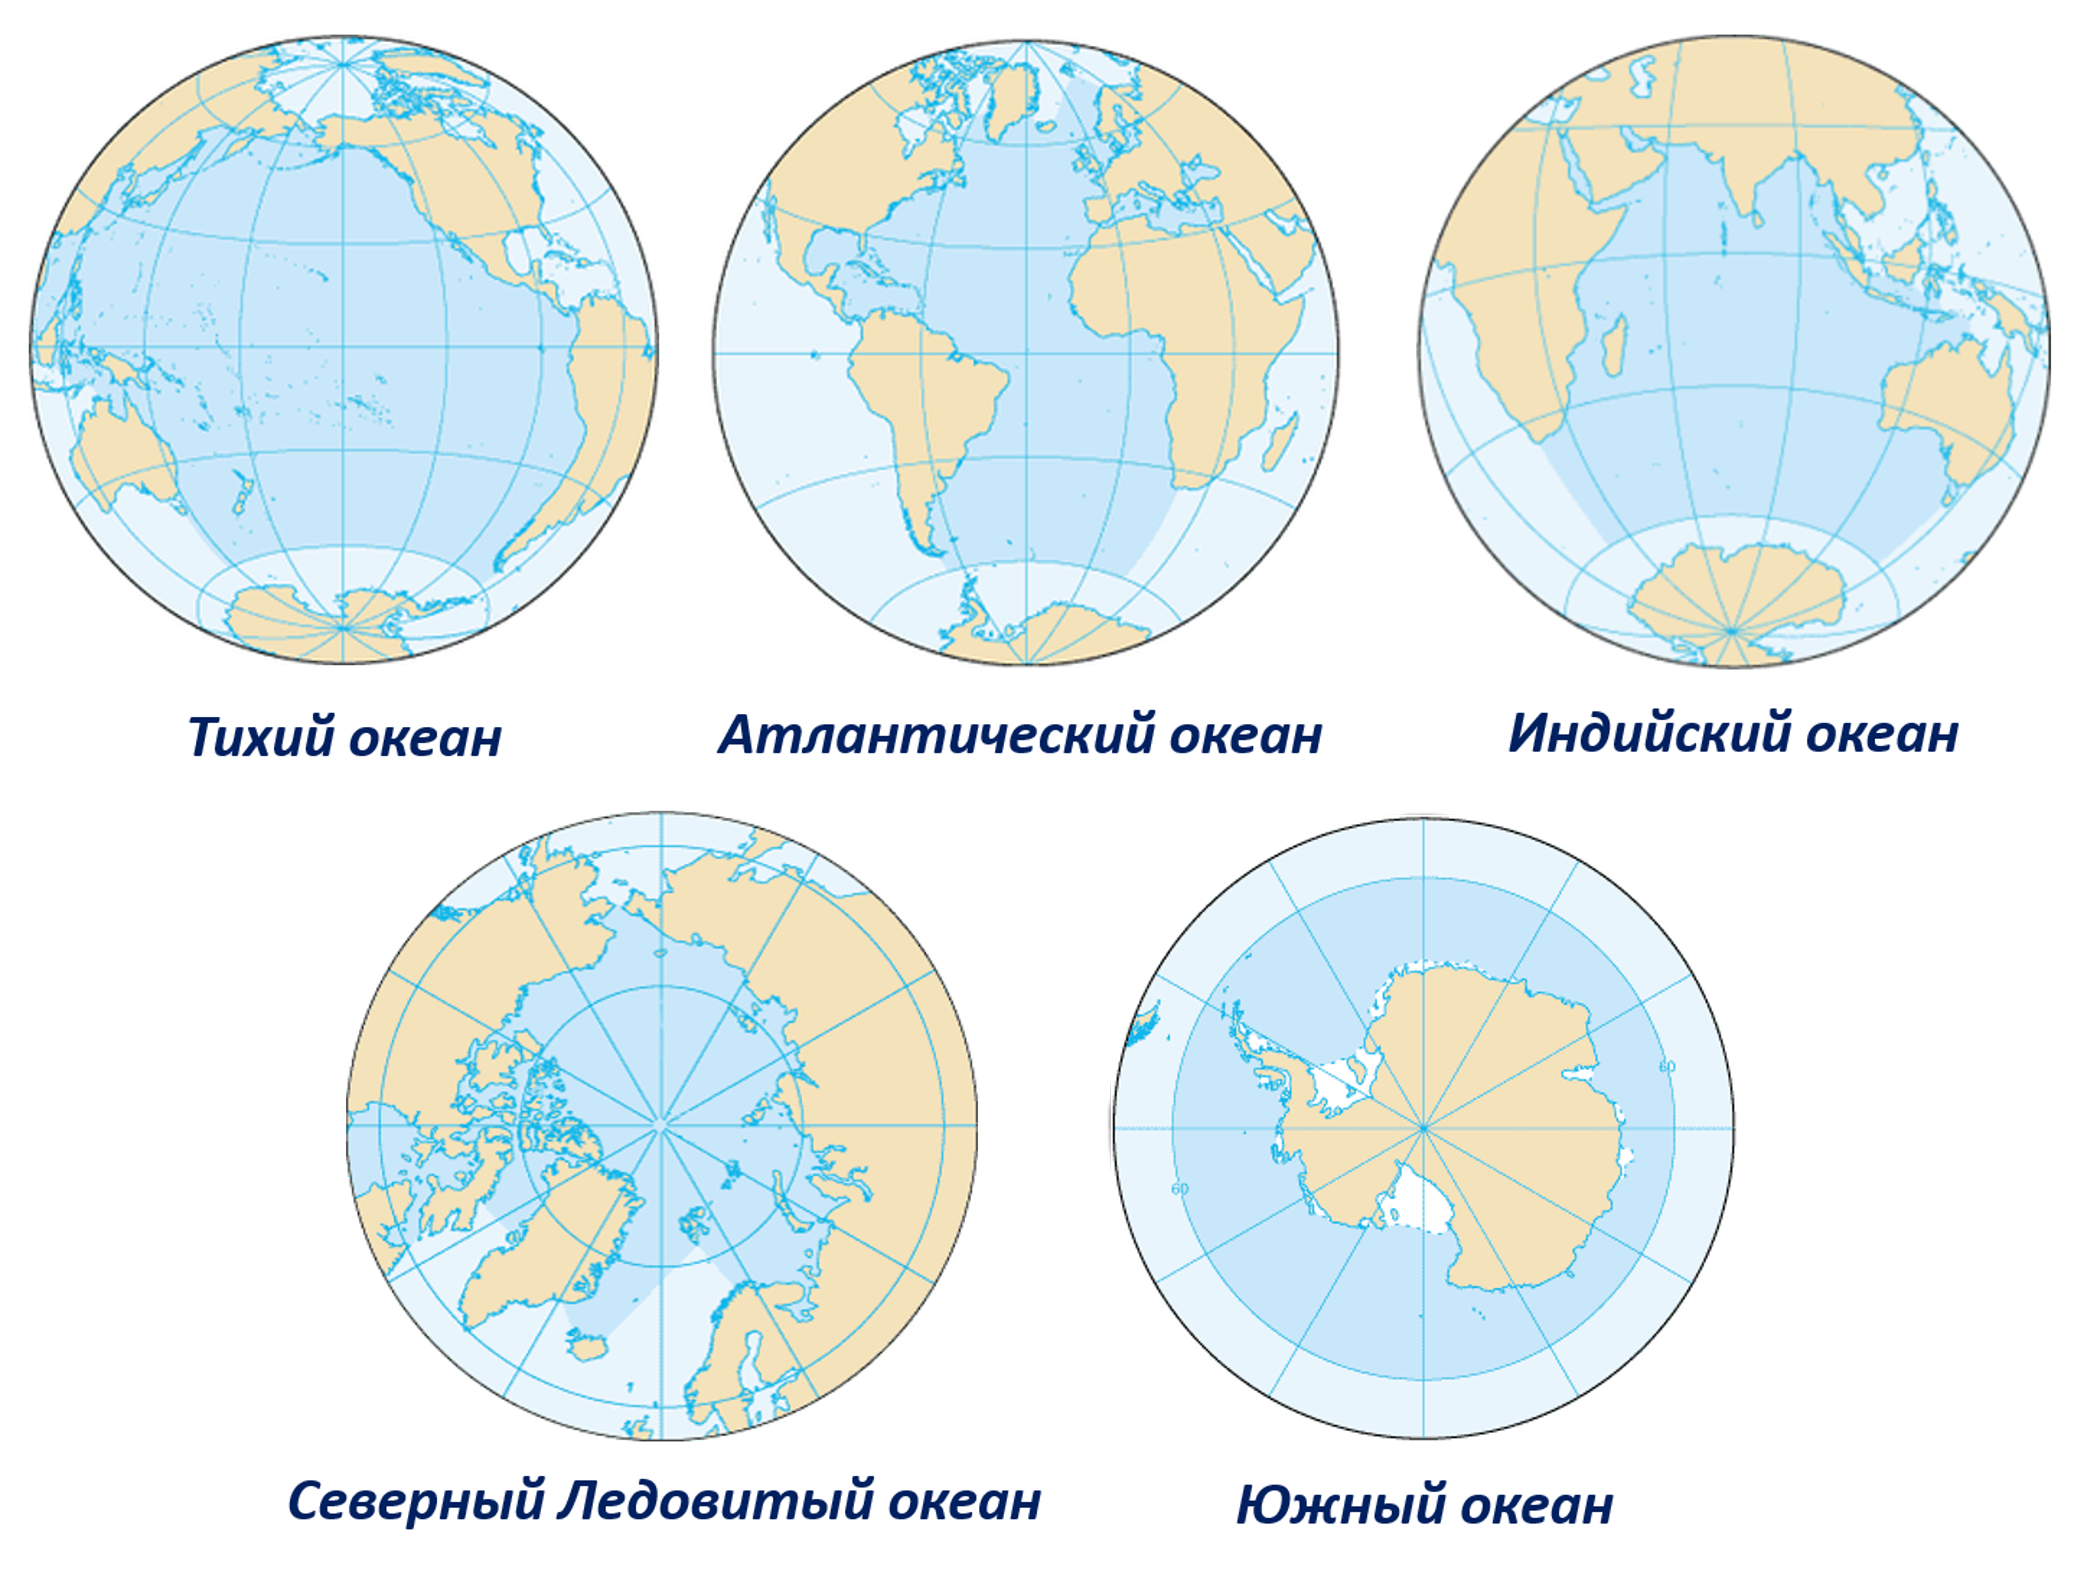 Северный Ледовитый океан в разы меньше любого другого океана Земли Однако всё же есть несколько достаточно крупных рек, которые относятся к его бассейну